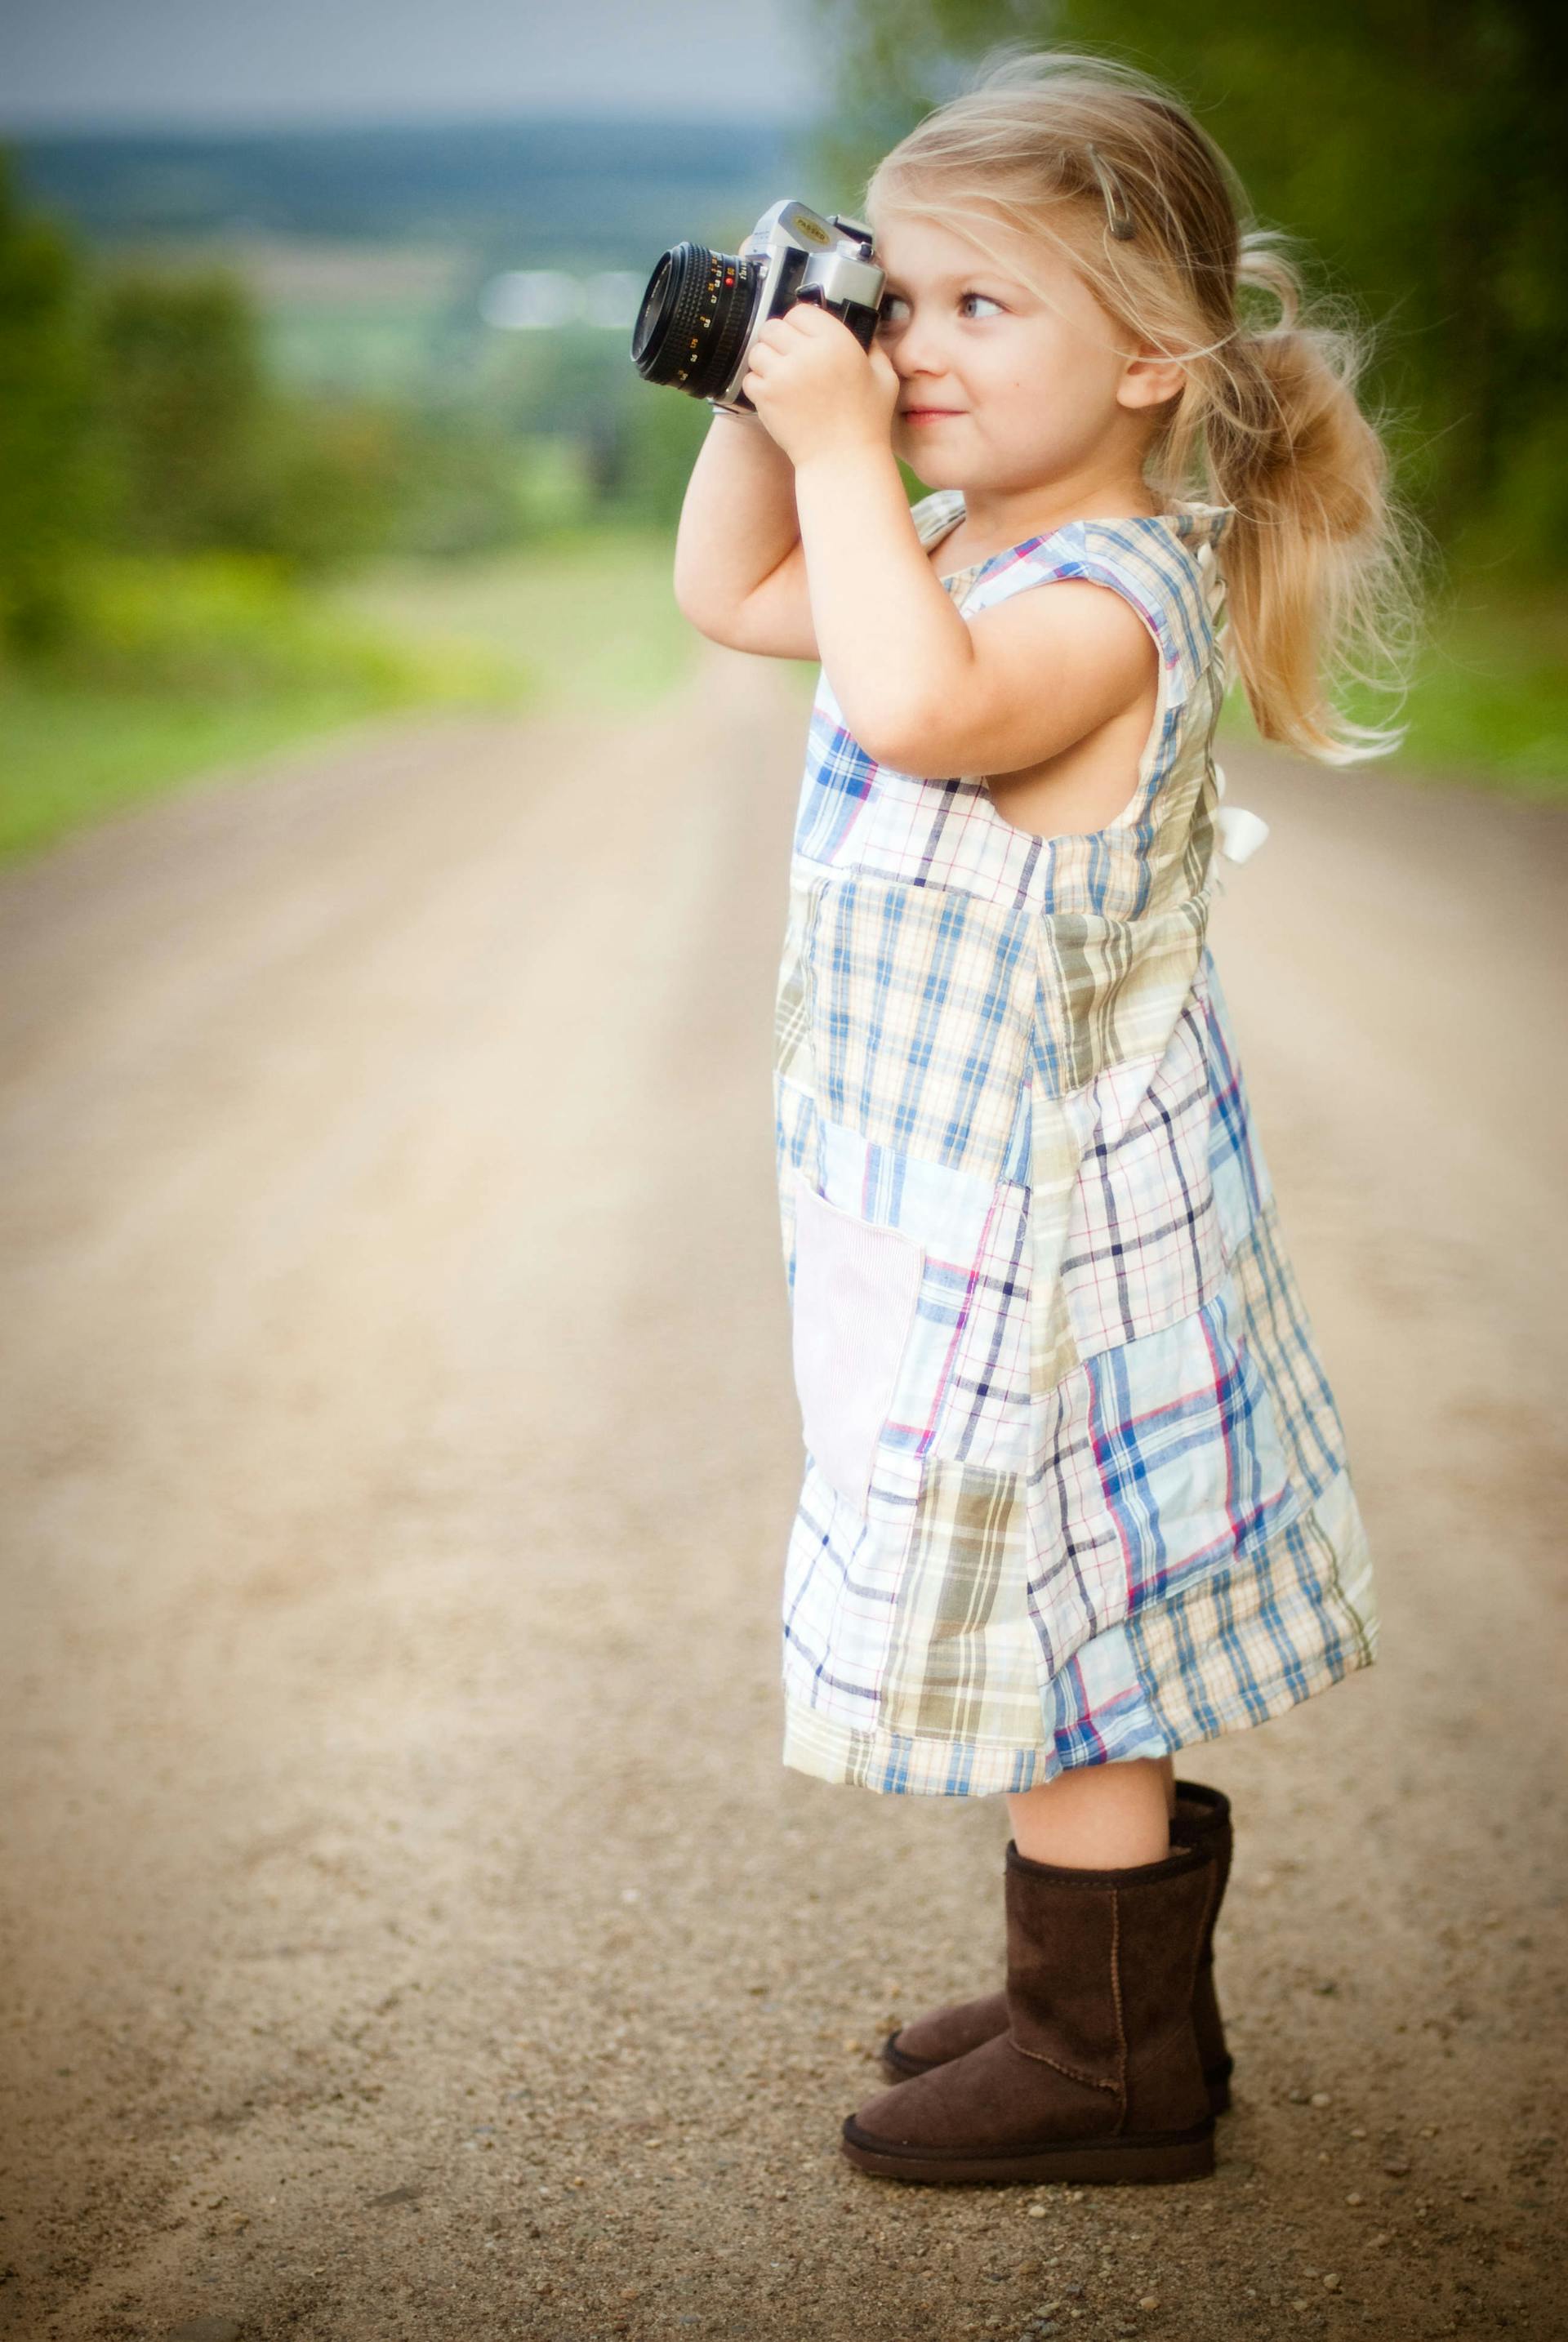 Une petite fille qui clique sur une photo avec son appareil photo | Source : Pexels